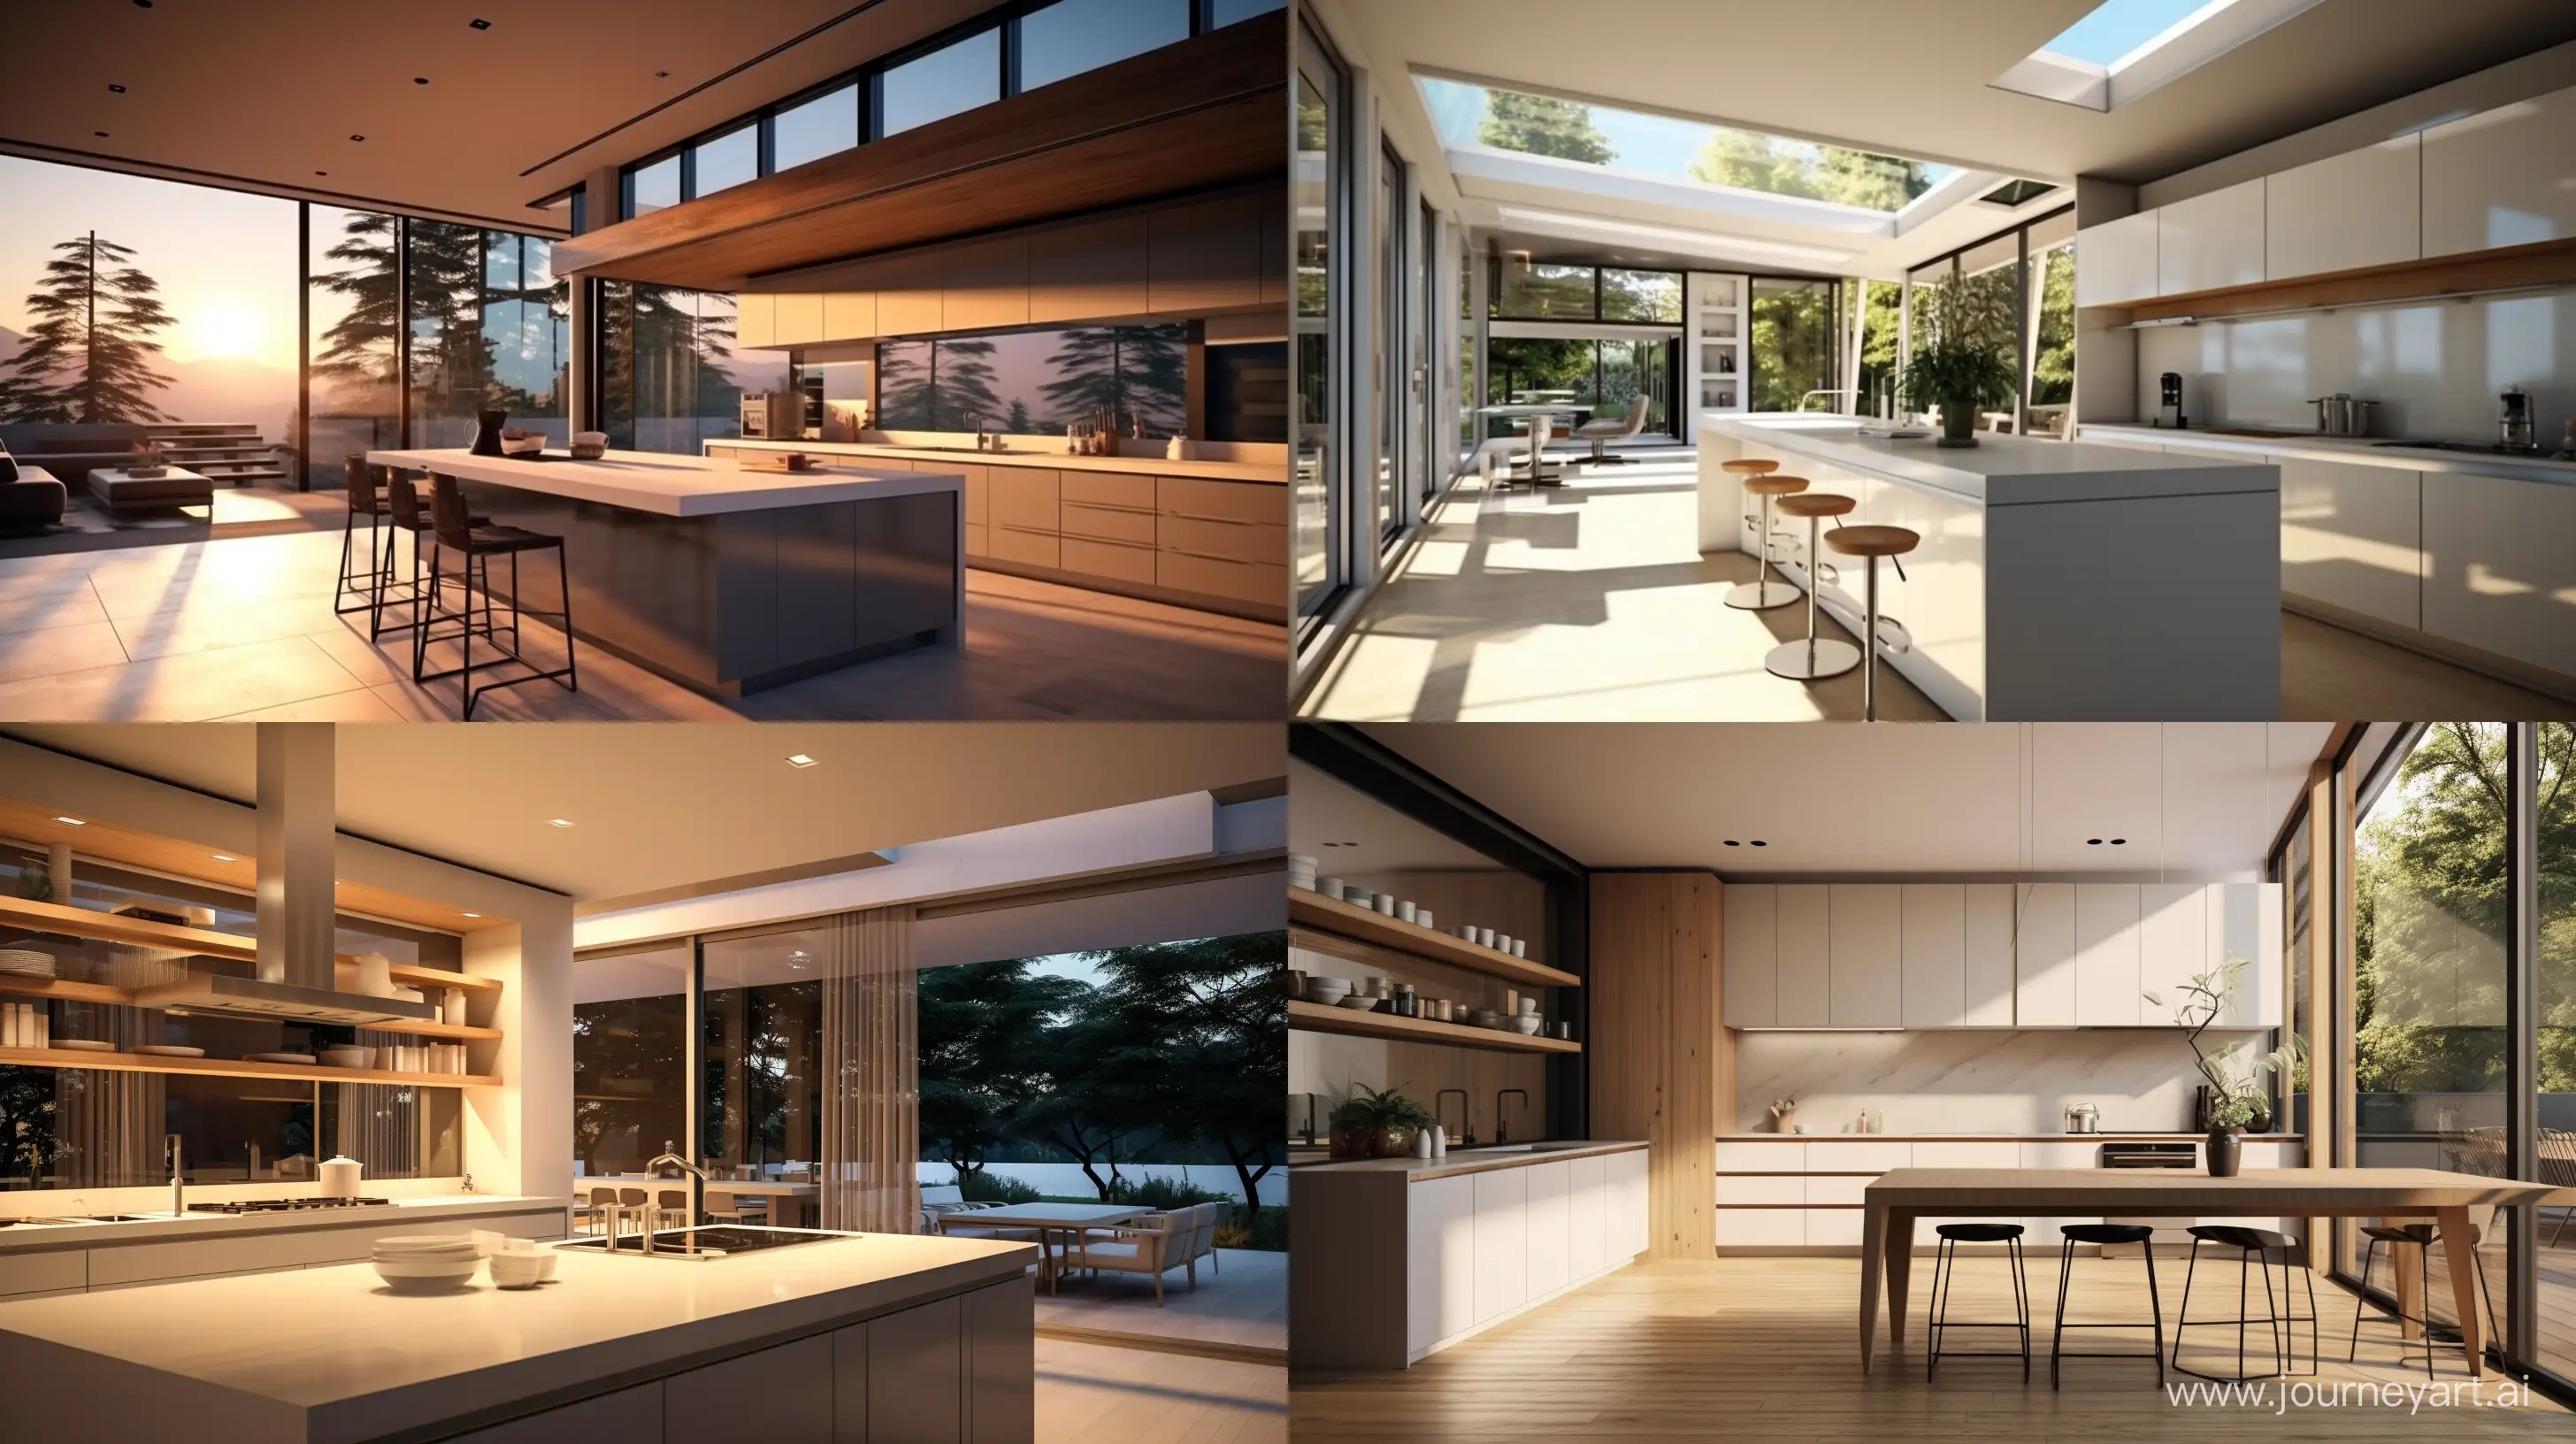 Modern-Minimalist-Kitchen-Architecture-with-Bright-Lighting-and-Sleek-Design